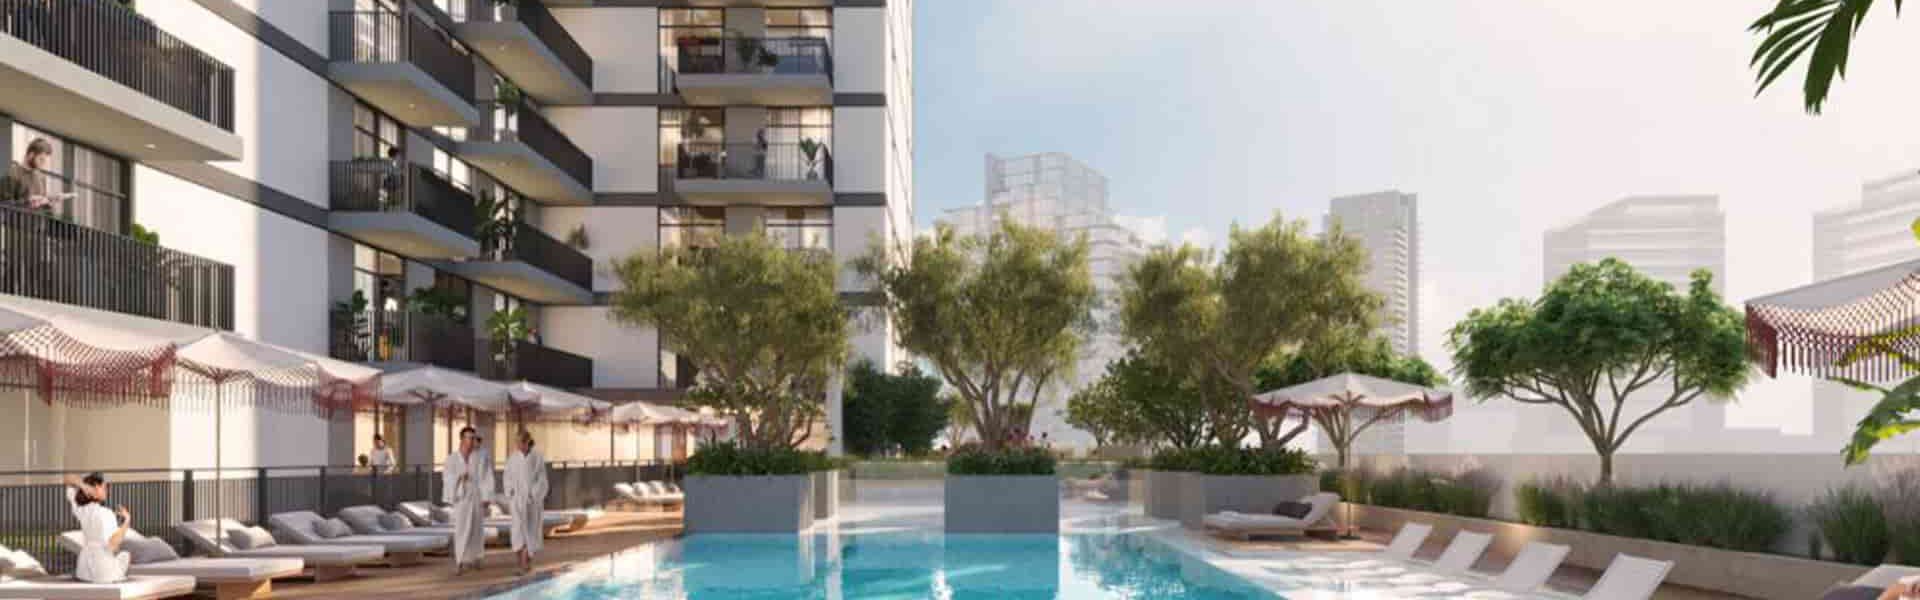 خرید آپارتمان دبی از پروژه آپارتمانی هادلی هایتس در جی وی سی